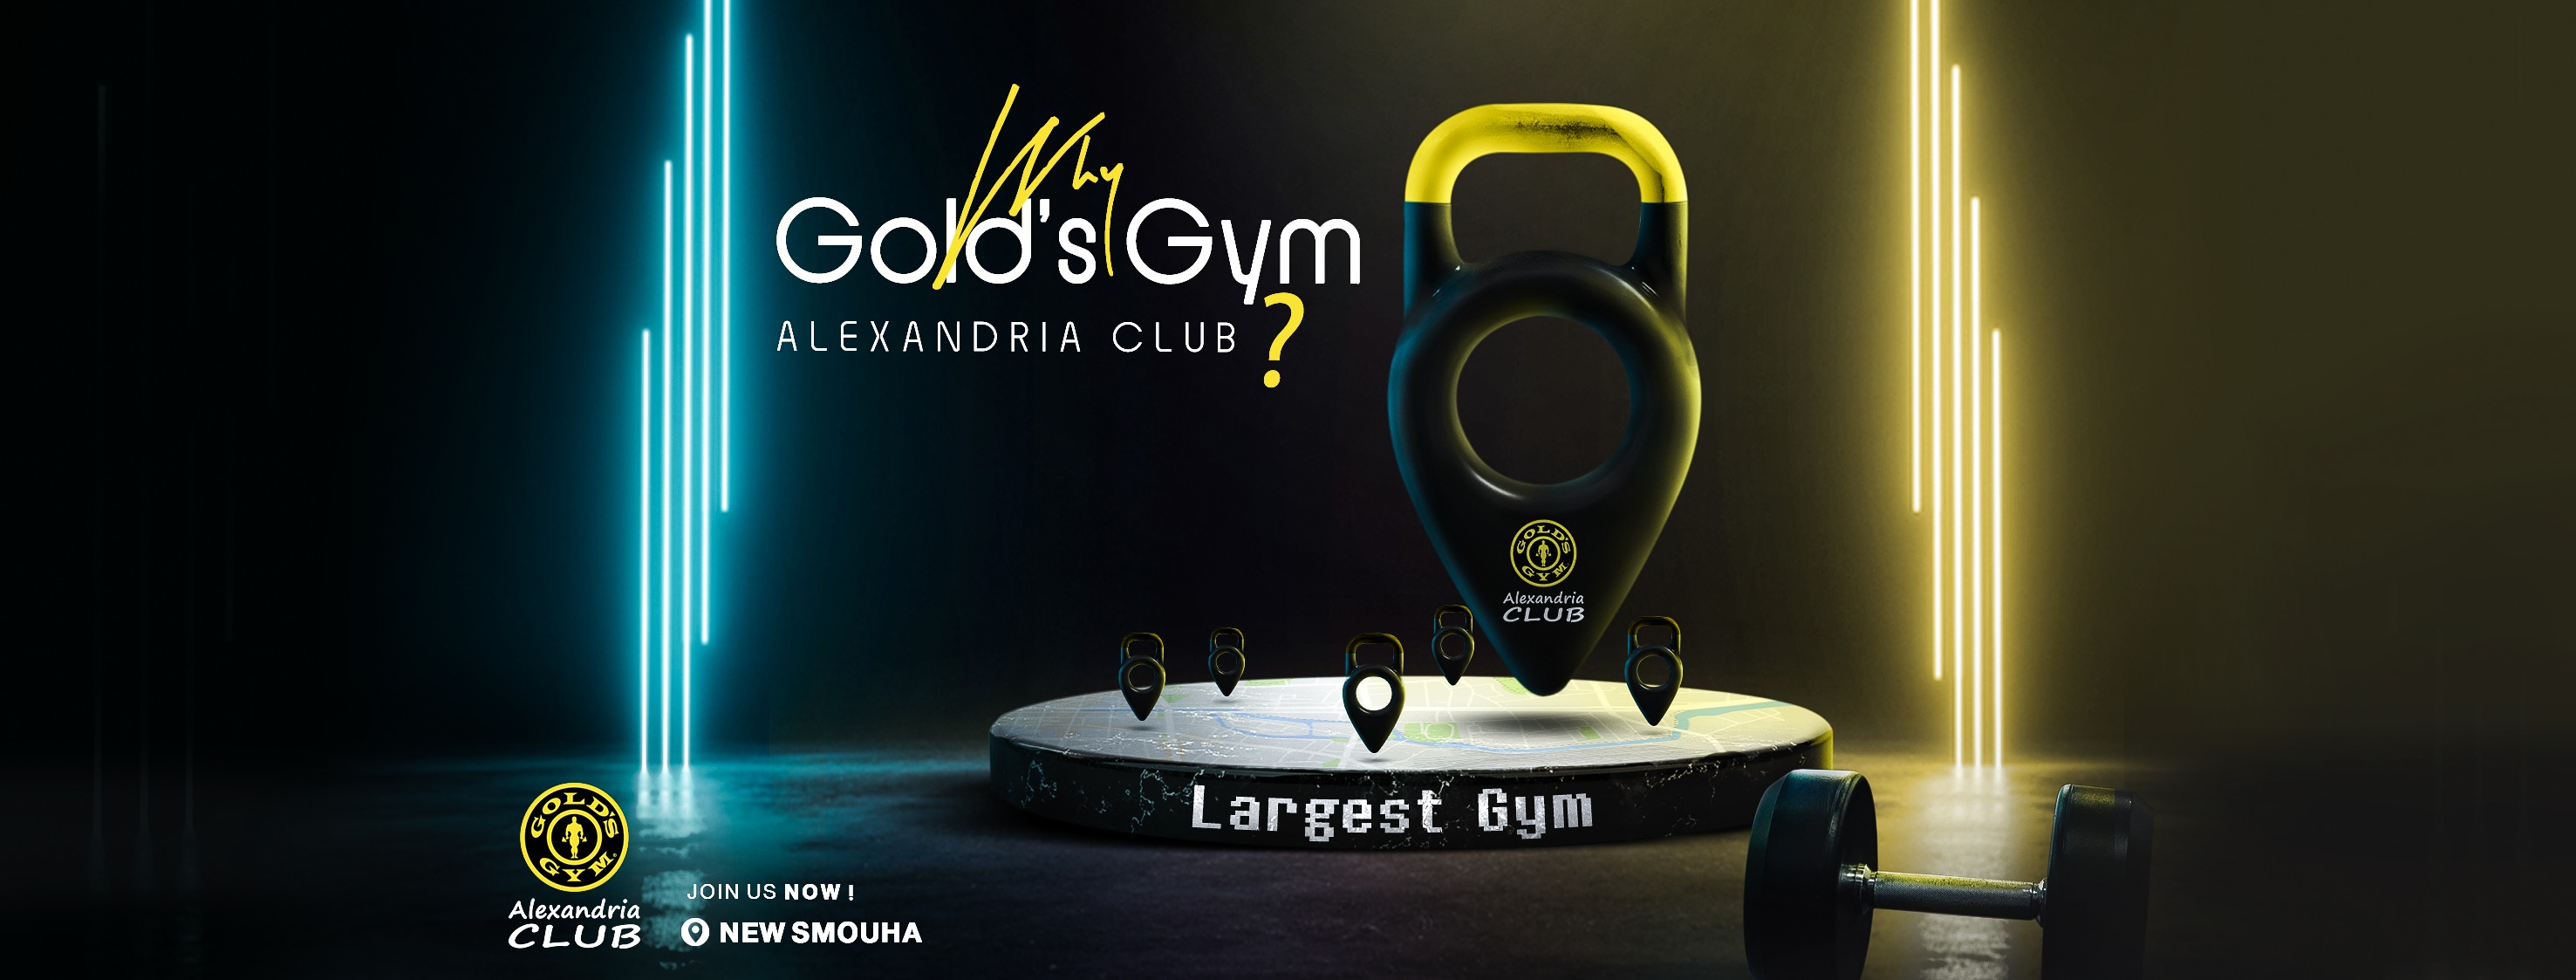 Gold's Gym Alex Club